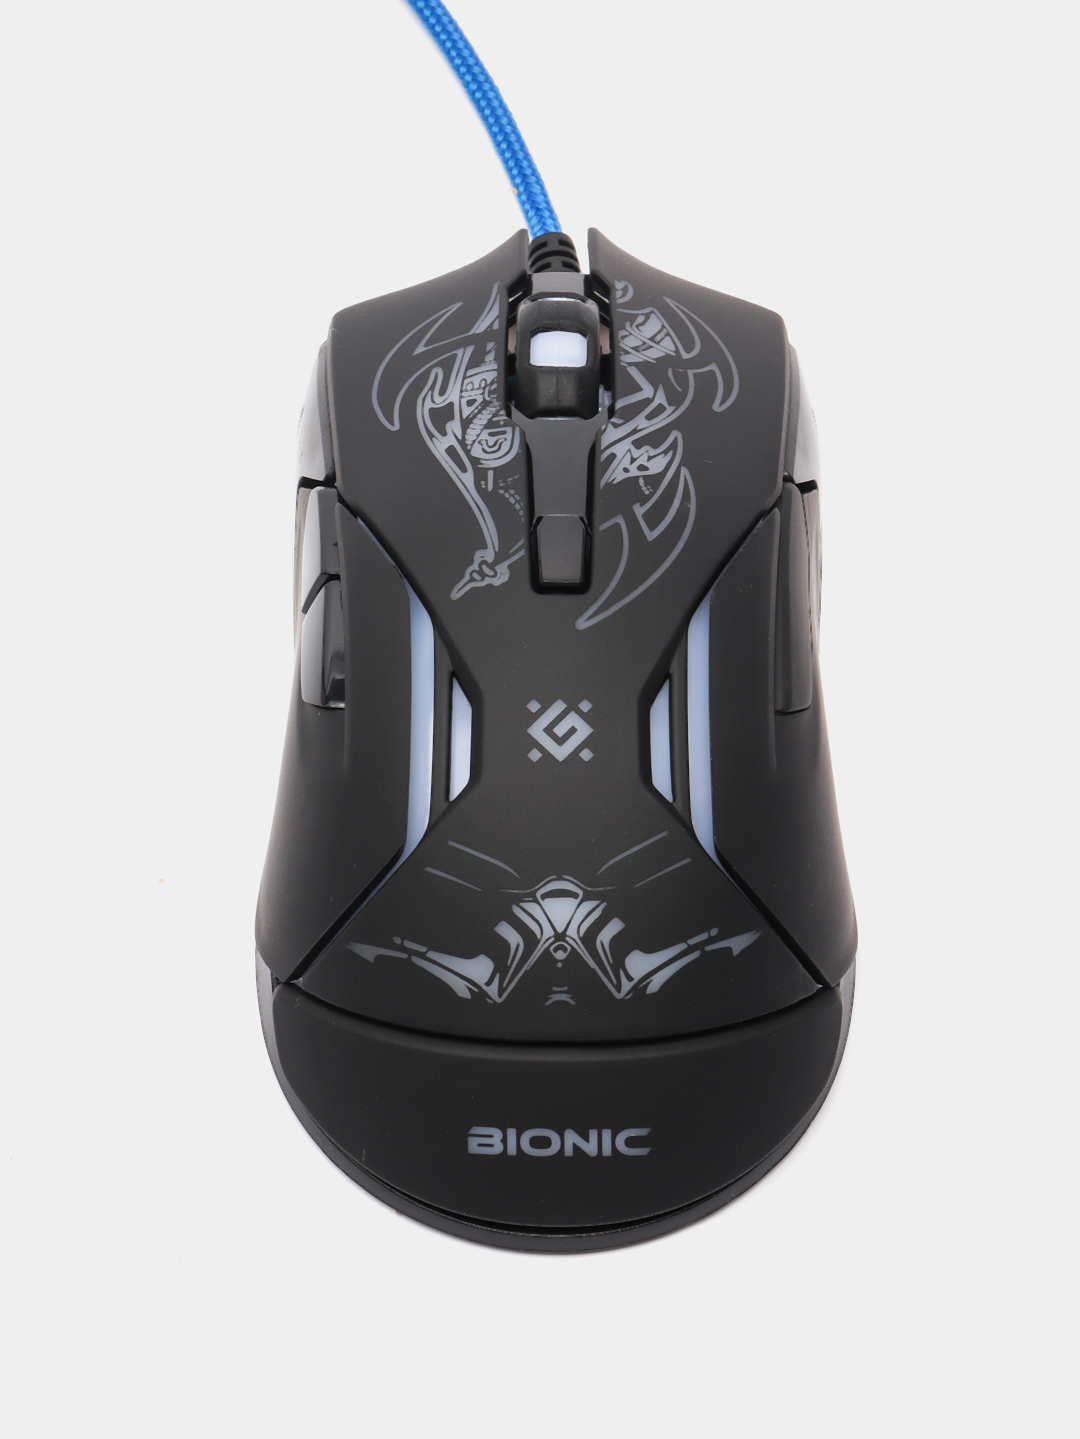 Подсветка мышки defender. Мышь Defender Bionic GM-250l. Проводная мышь Defender Skull GM-180l оптика,6кнопок,800-3200dpi игровая 1,5m, USB. Defender мышь игровая Bionic GM-250l 6кн. 3200dpi + коврик. Игровая мышка Дефендер с подсветкой.